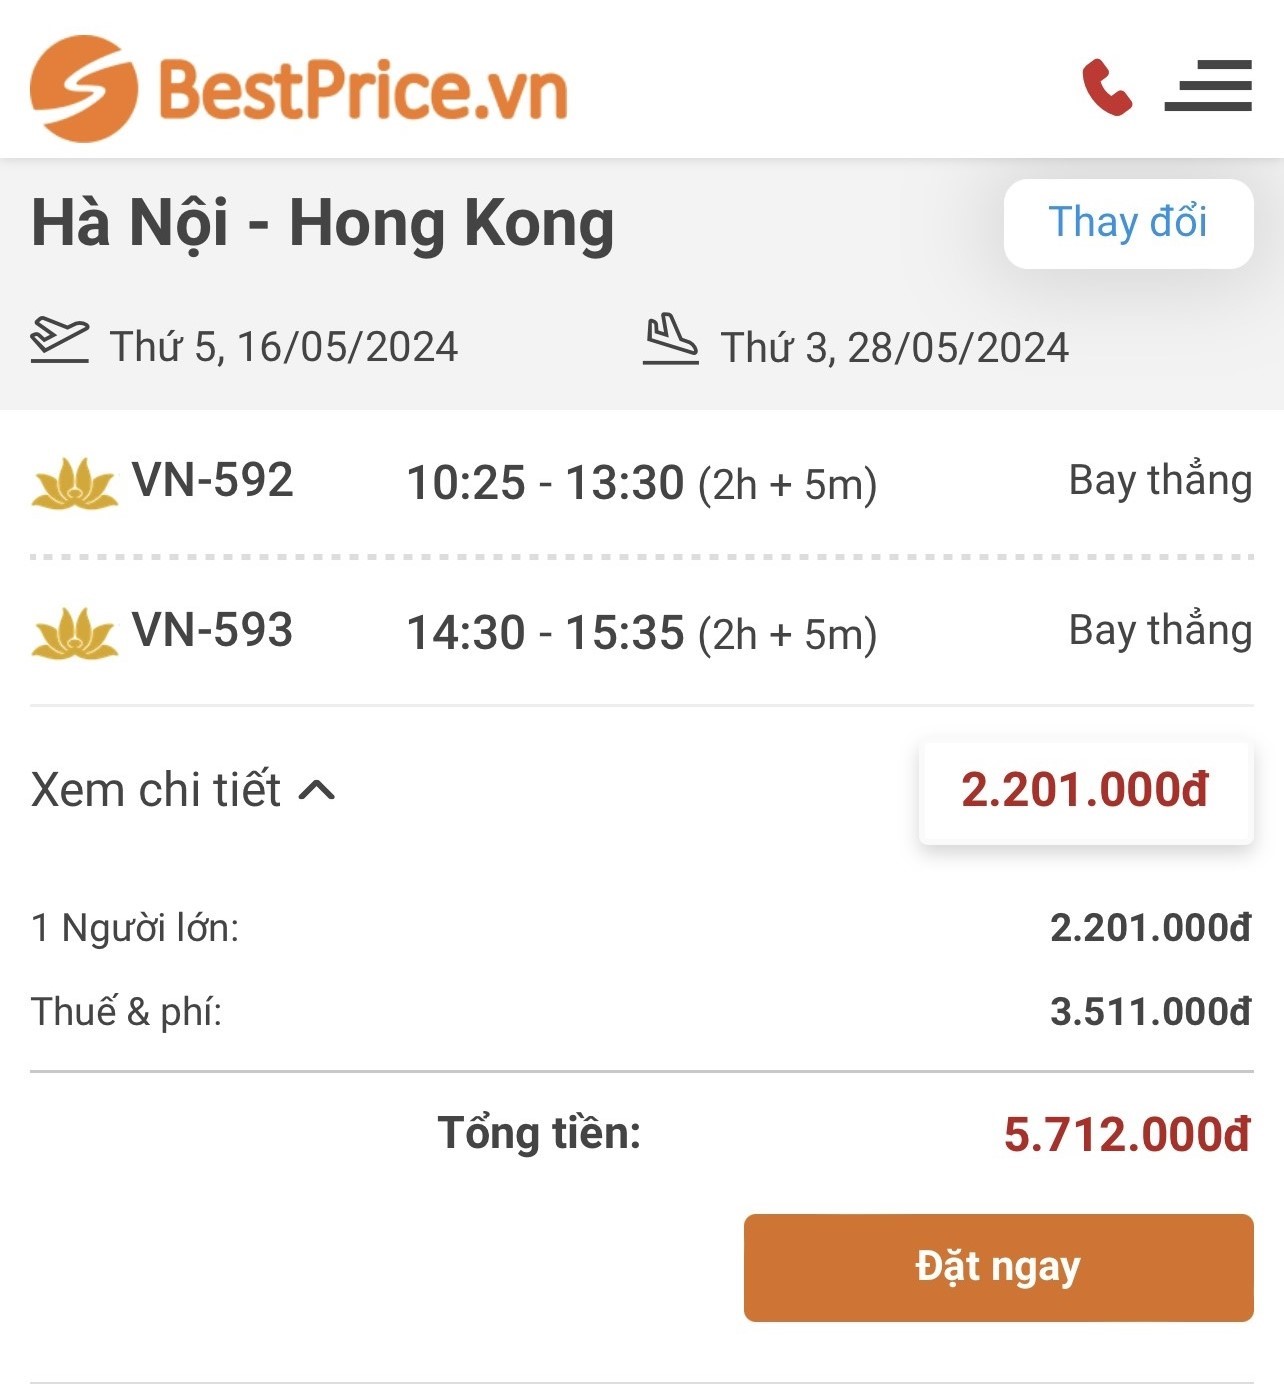 Giá vé máy bay Hà Nội - HongKong của Vietnam Airlines tại BestPrice